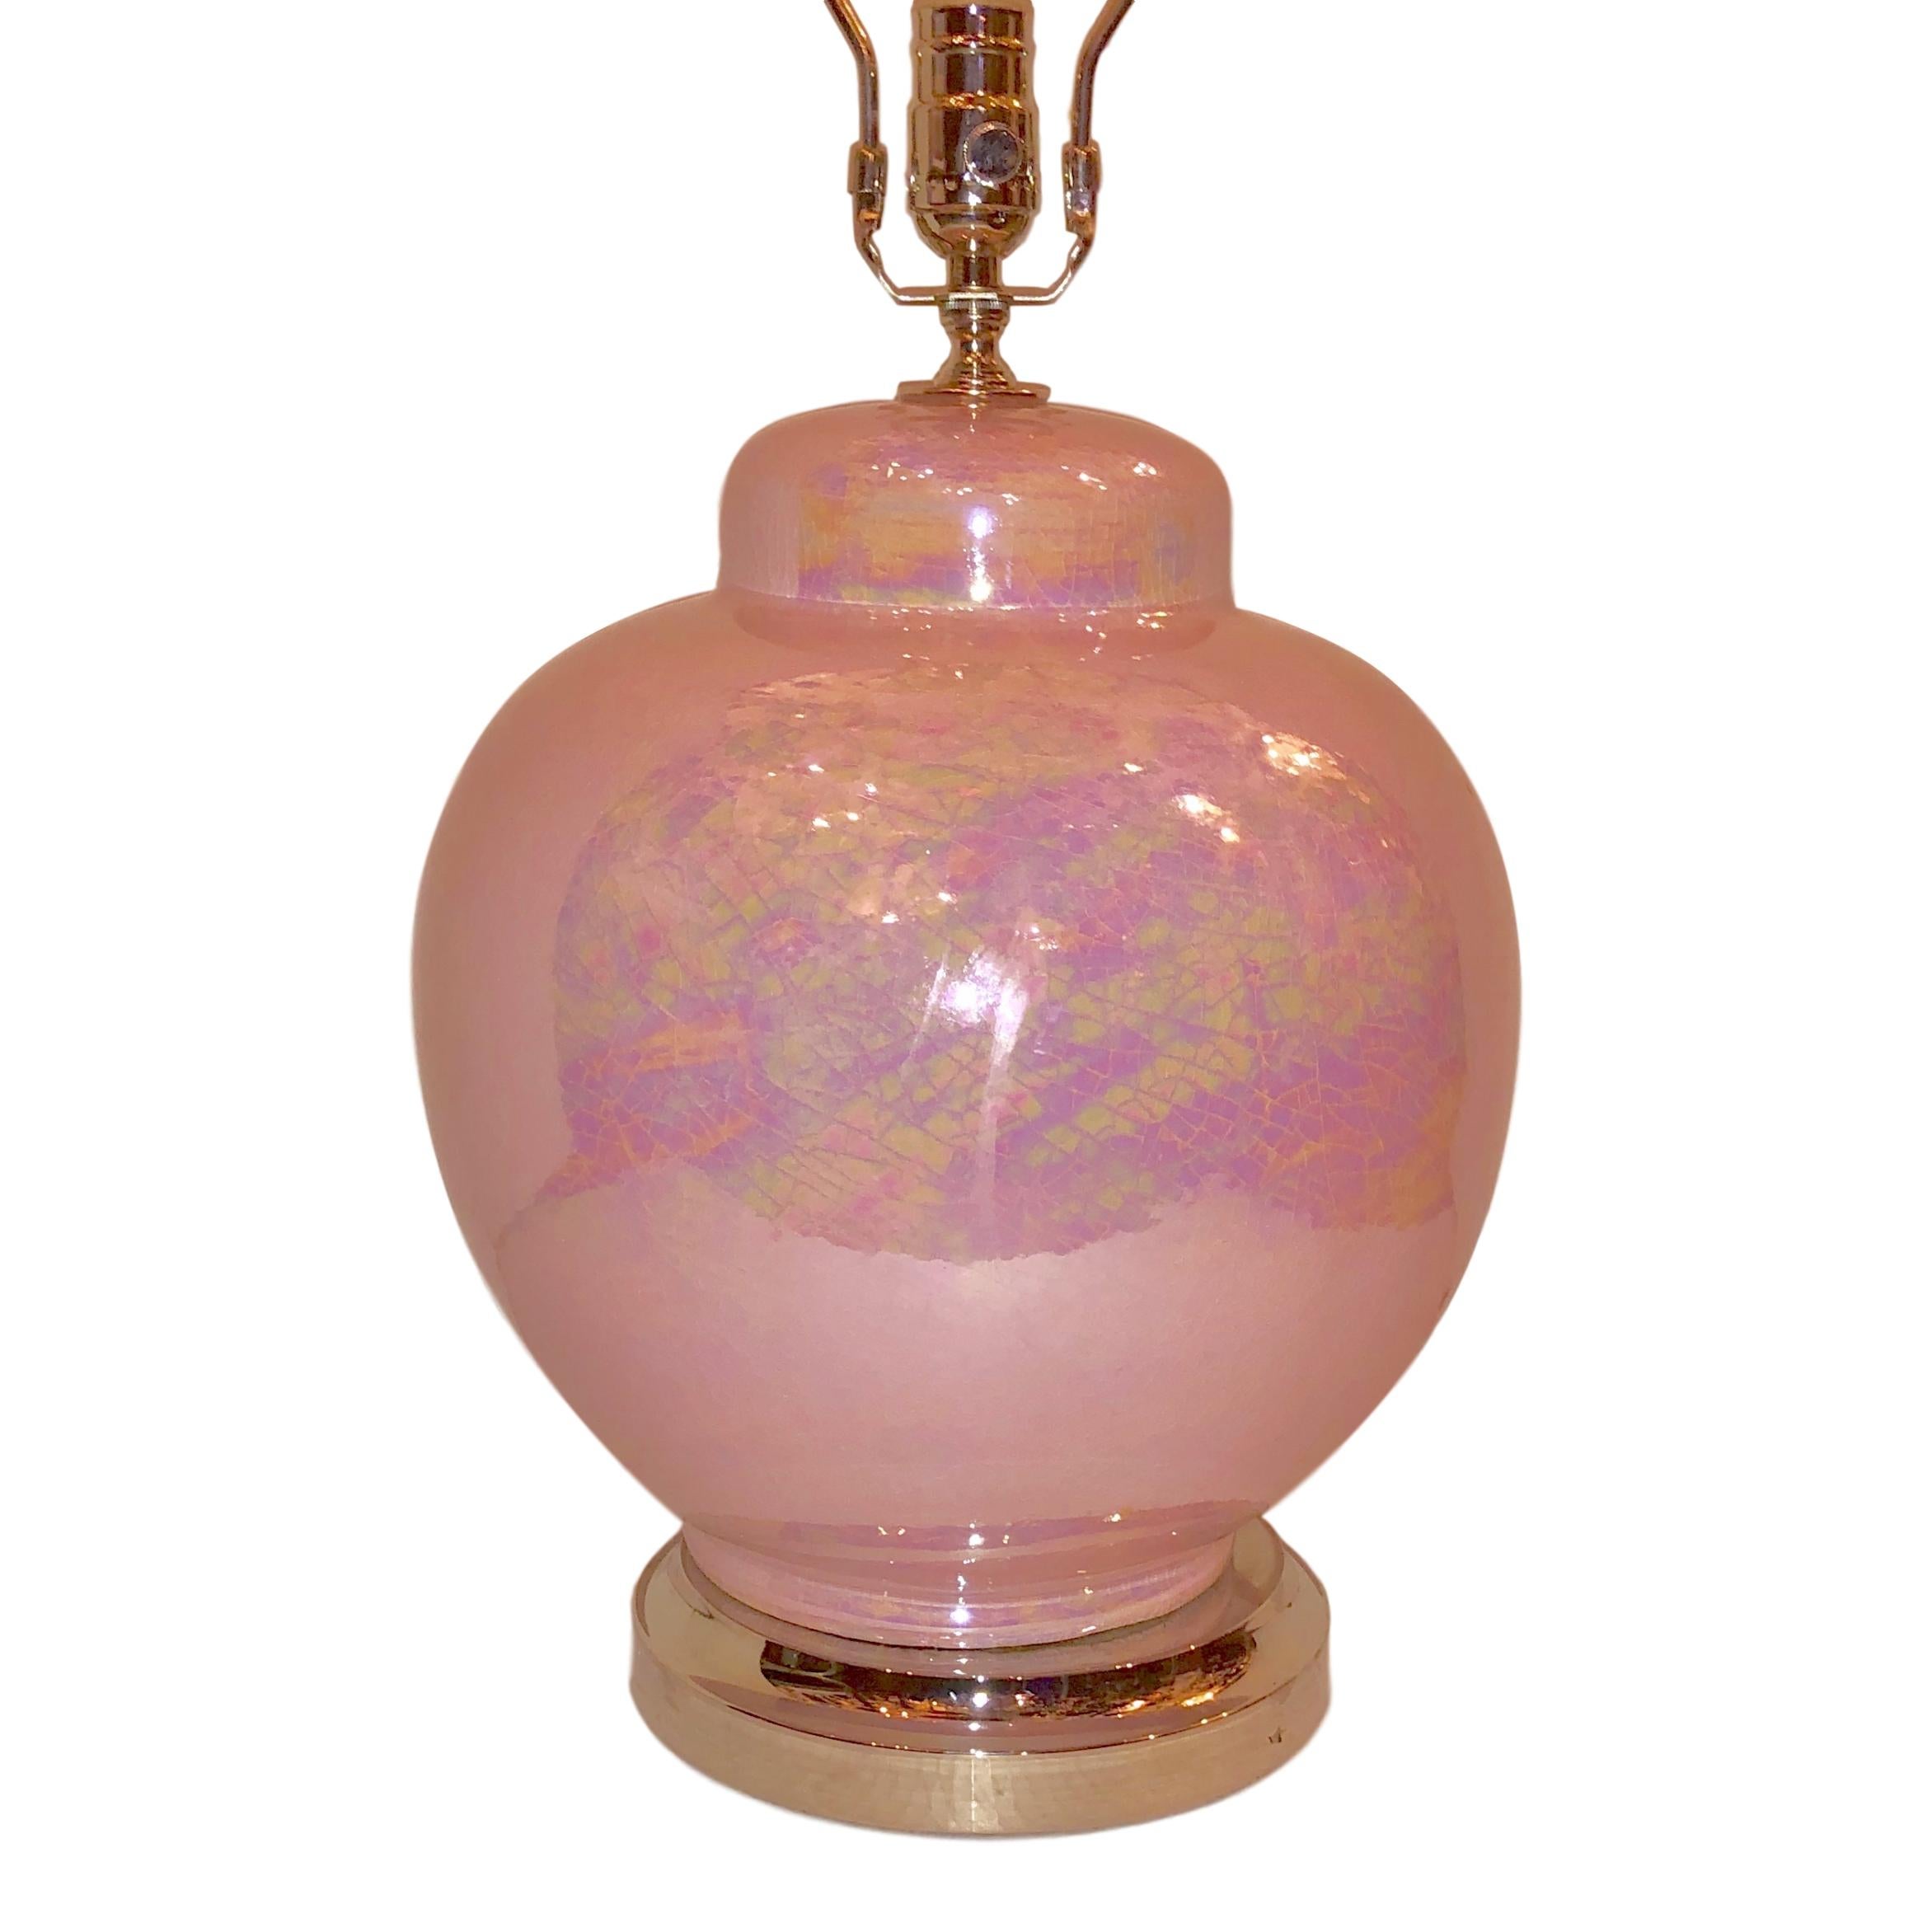 Paire de lampes de table italiennes en porcelaine émaillée rose datant des années 1950.

Mesures :
Hauteur du corps : 15.5